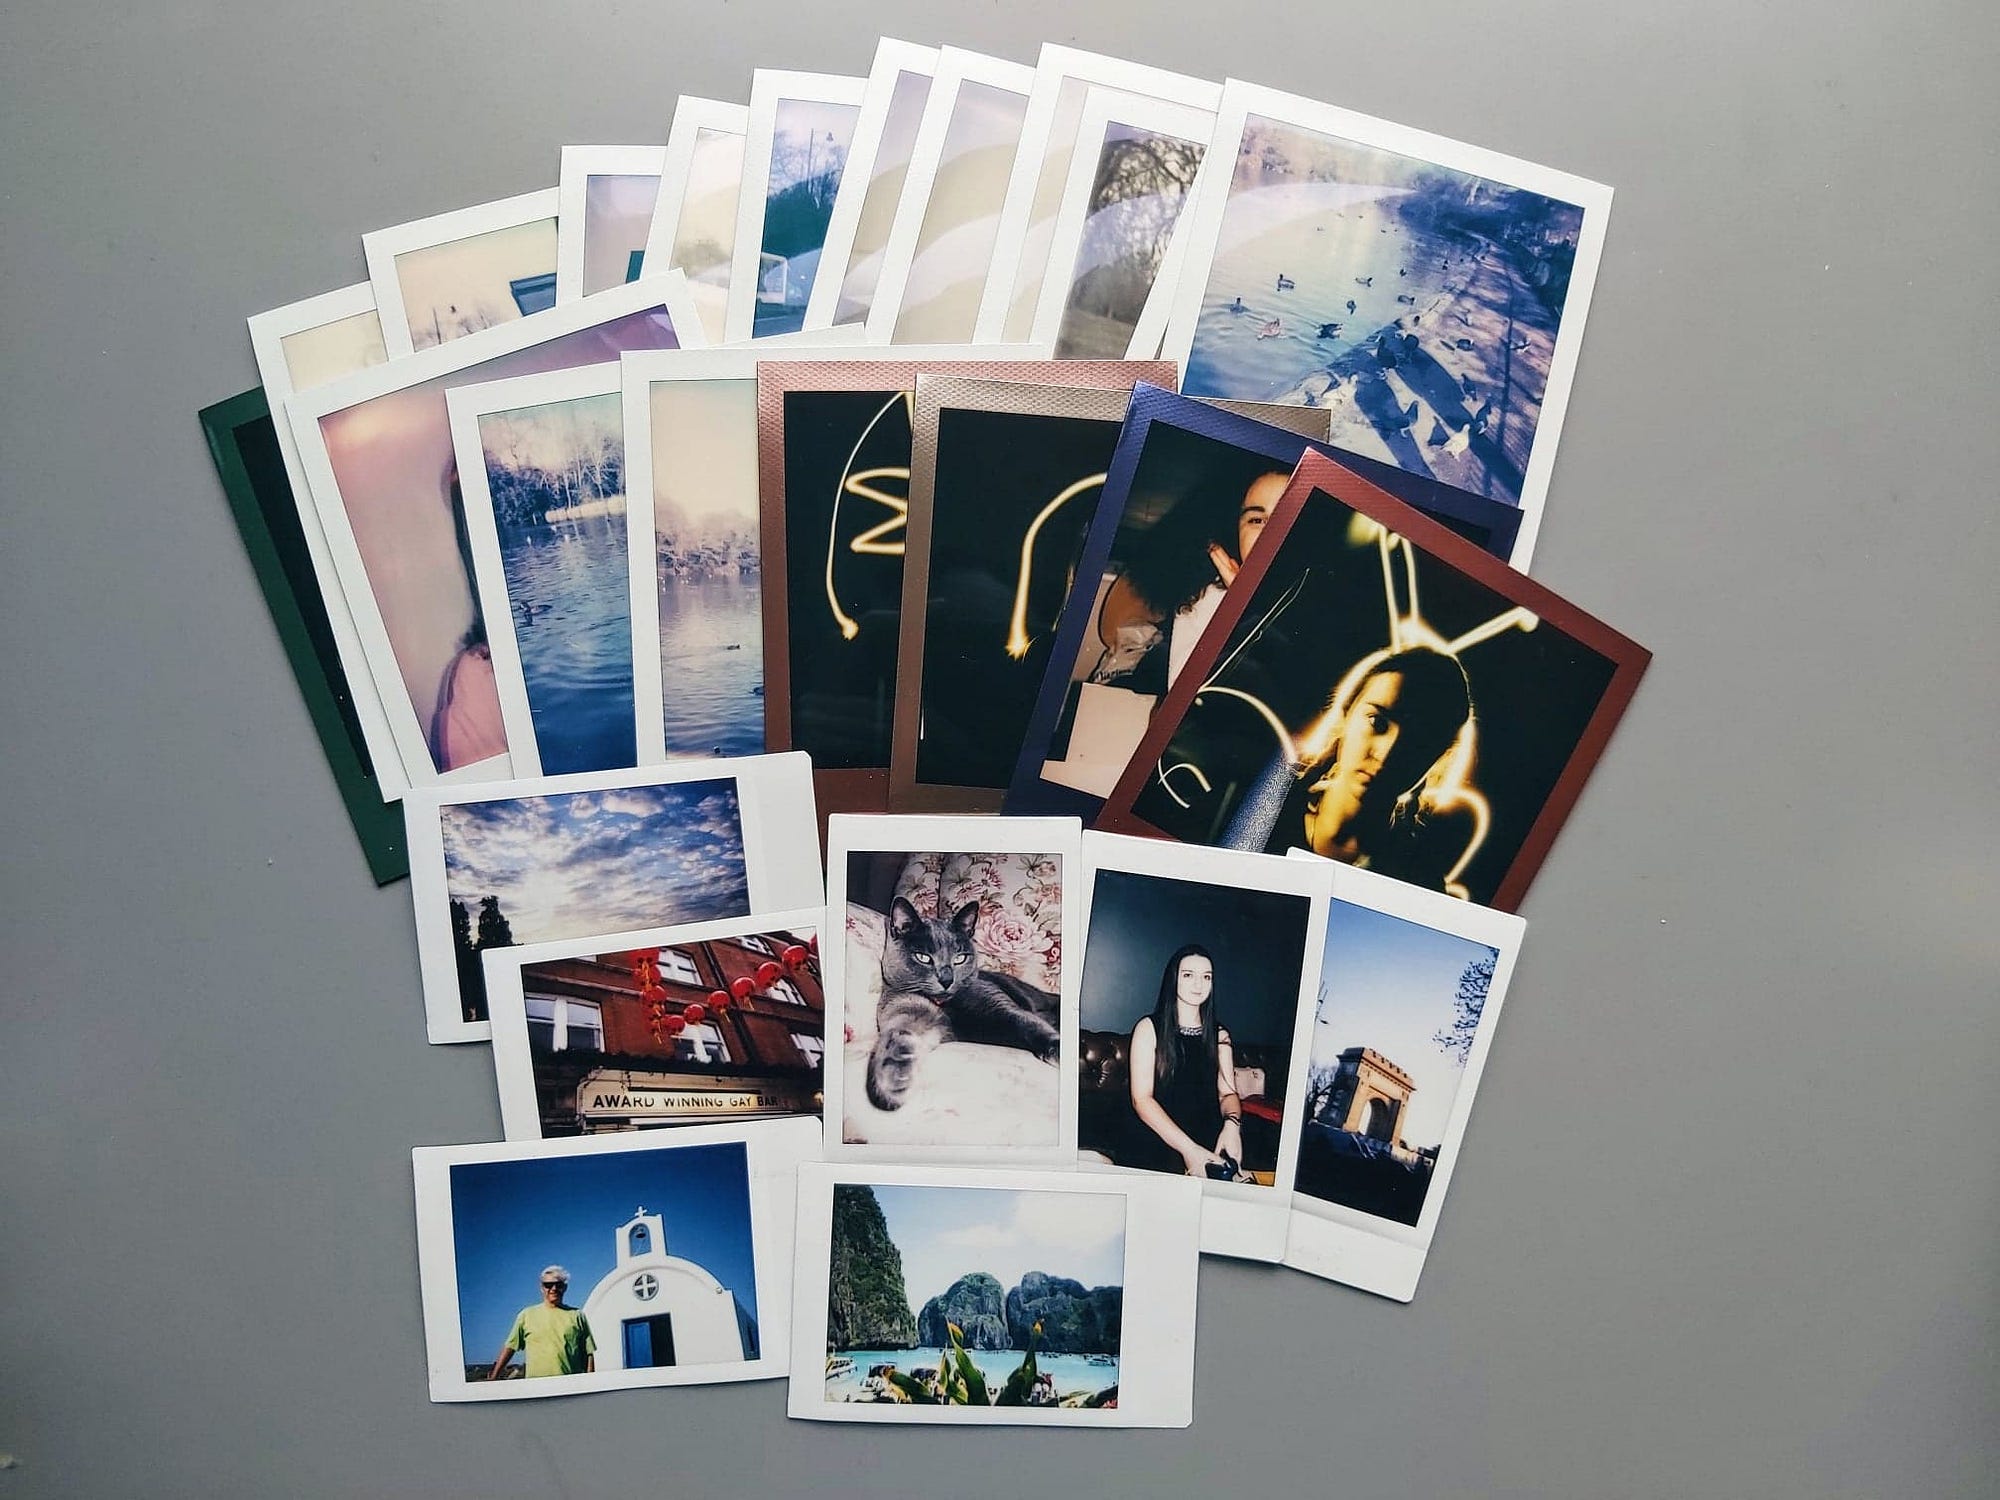 Polaroid Originals 600 ISO I-Type Color Instant Film 10 Pack